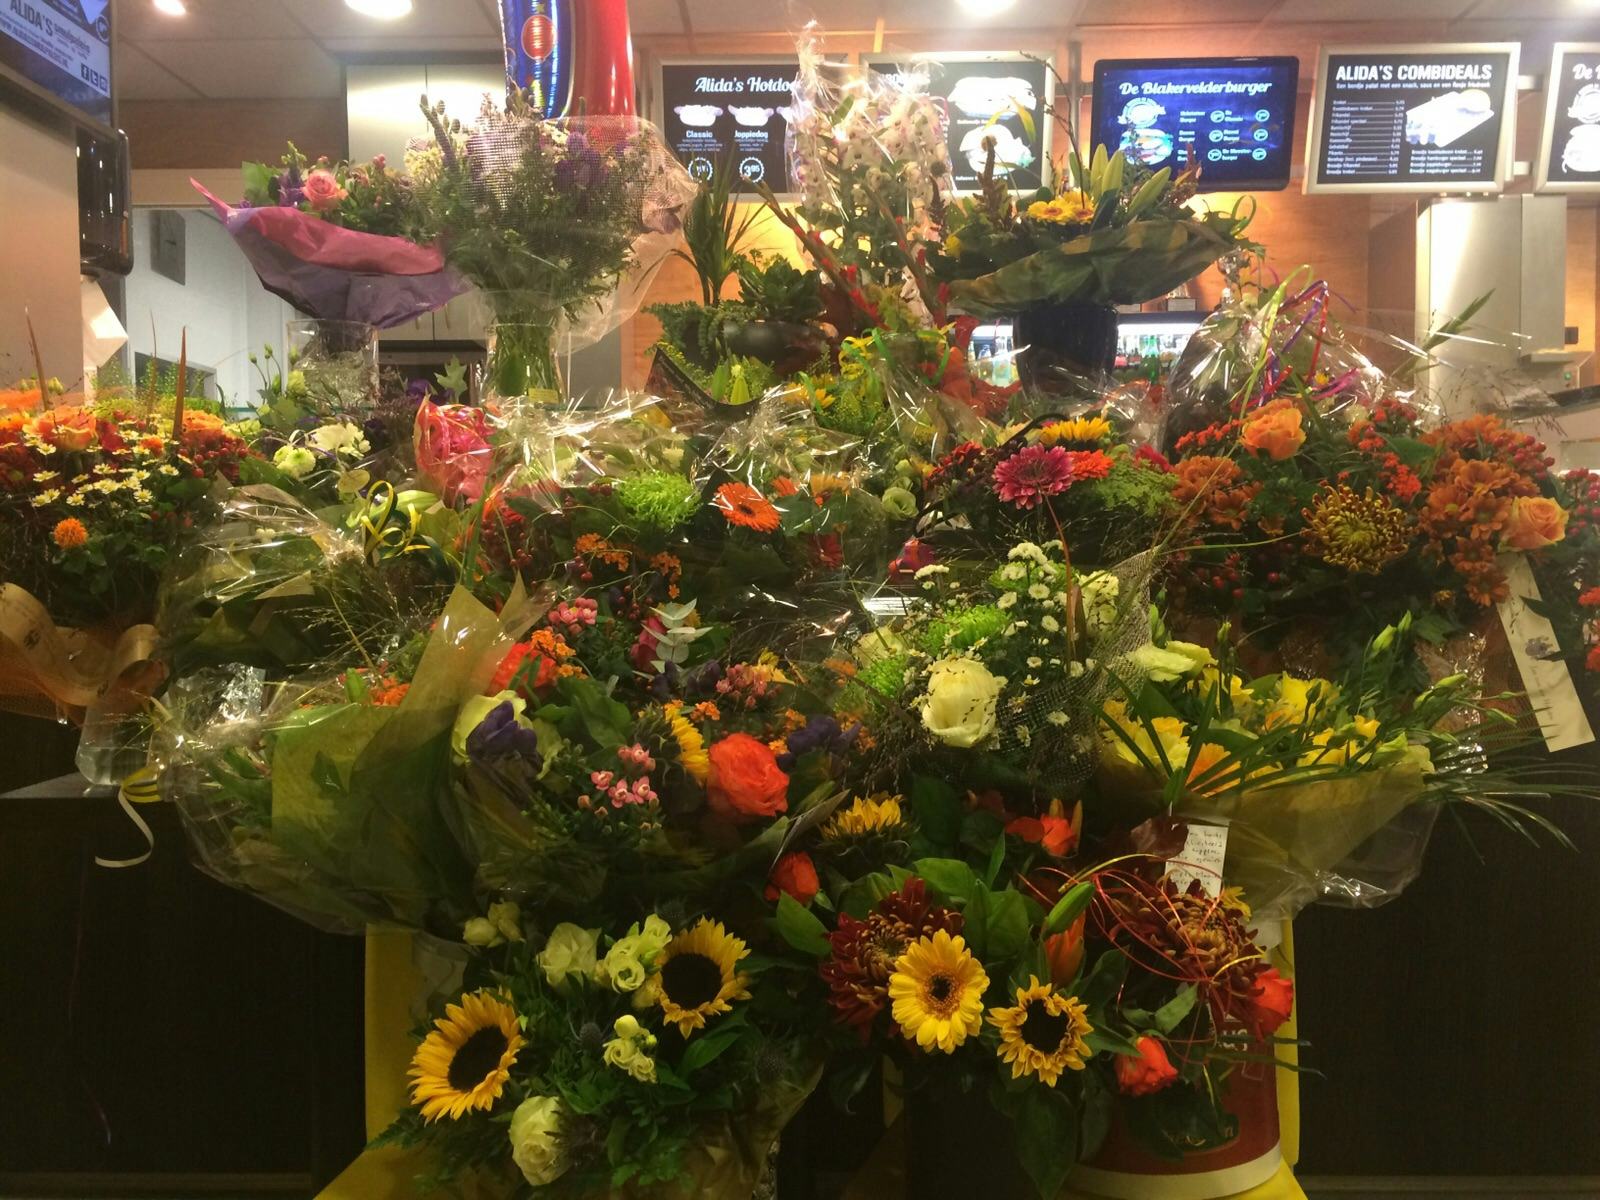 'Smulpaleis tijdelijk bloemenwinkel'